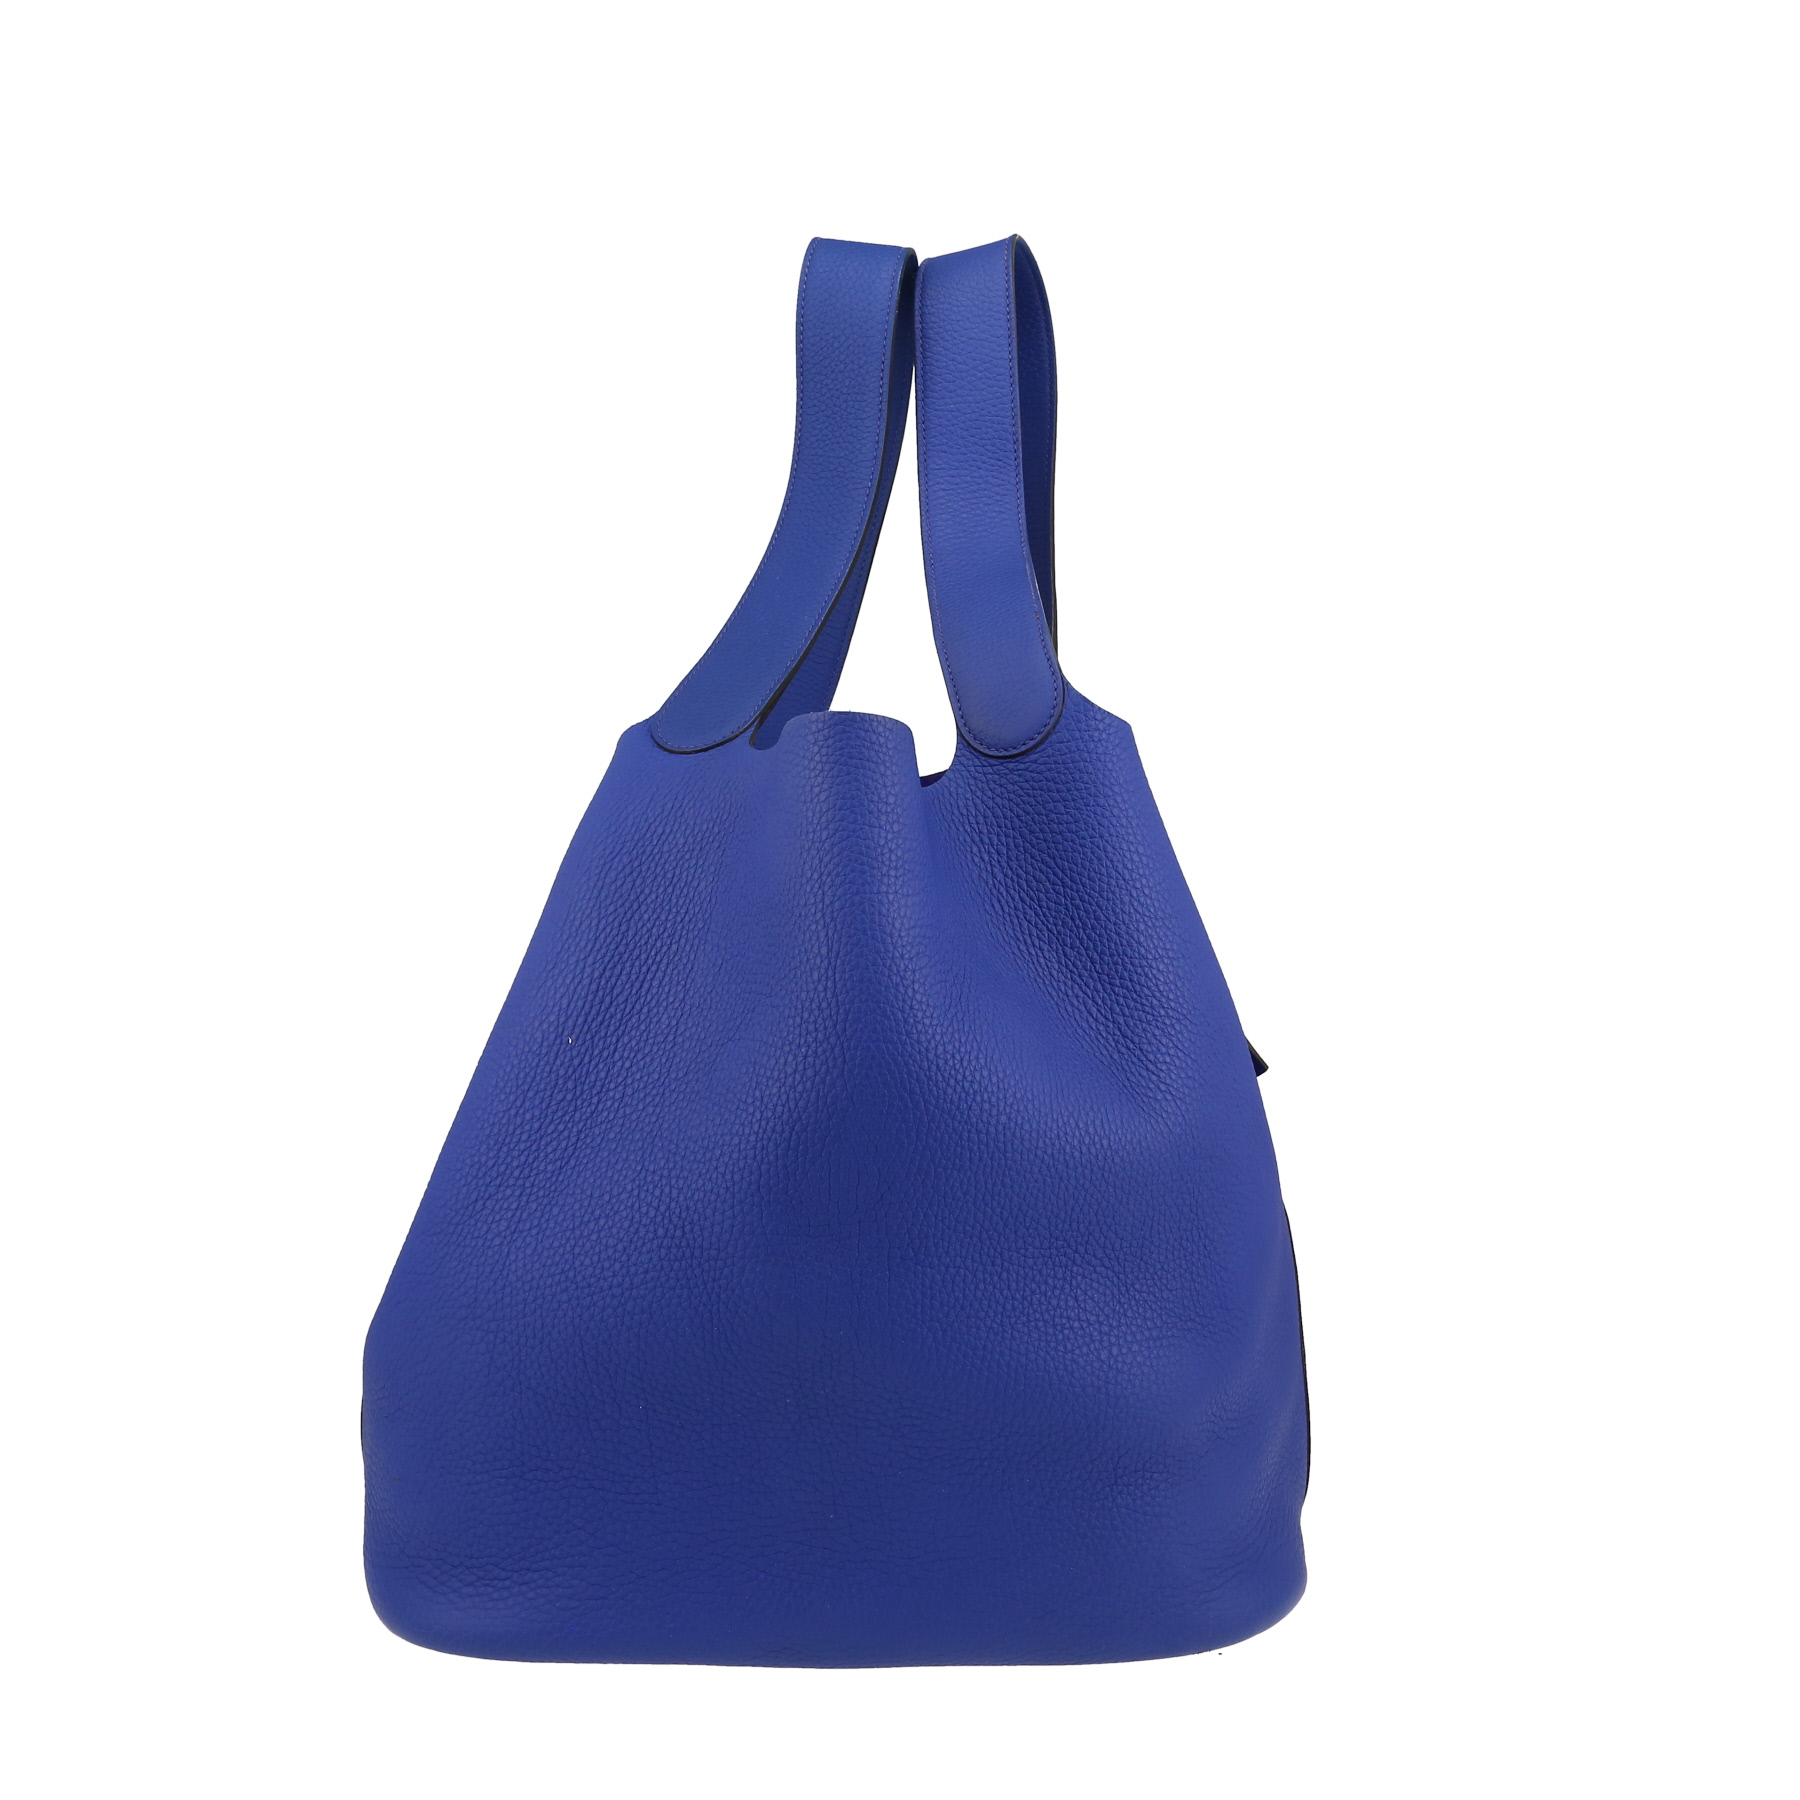 Picotin Large Model Handbag In Blue Togo Leather